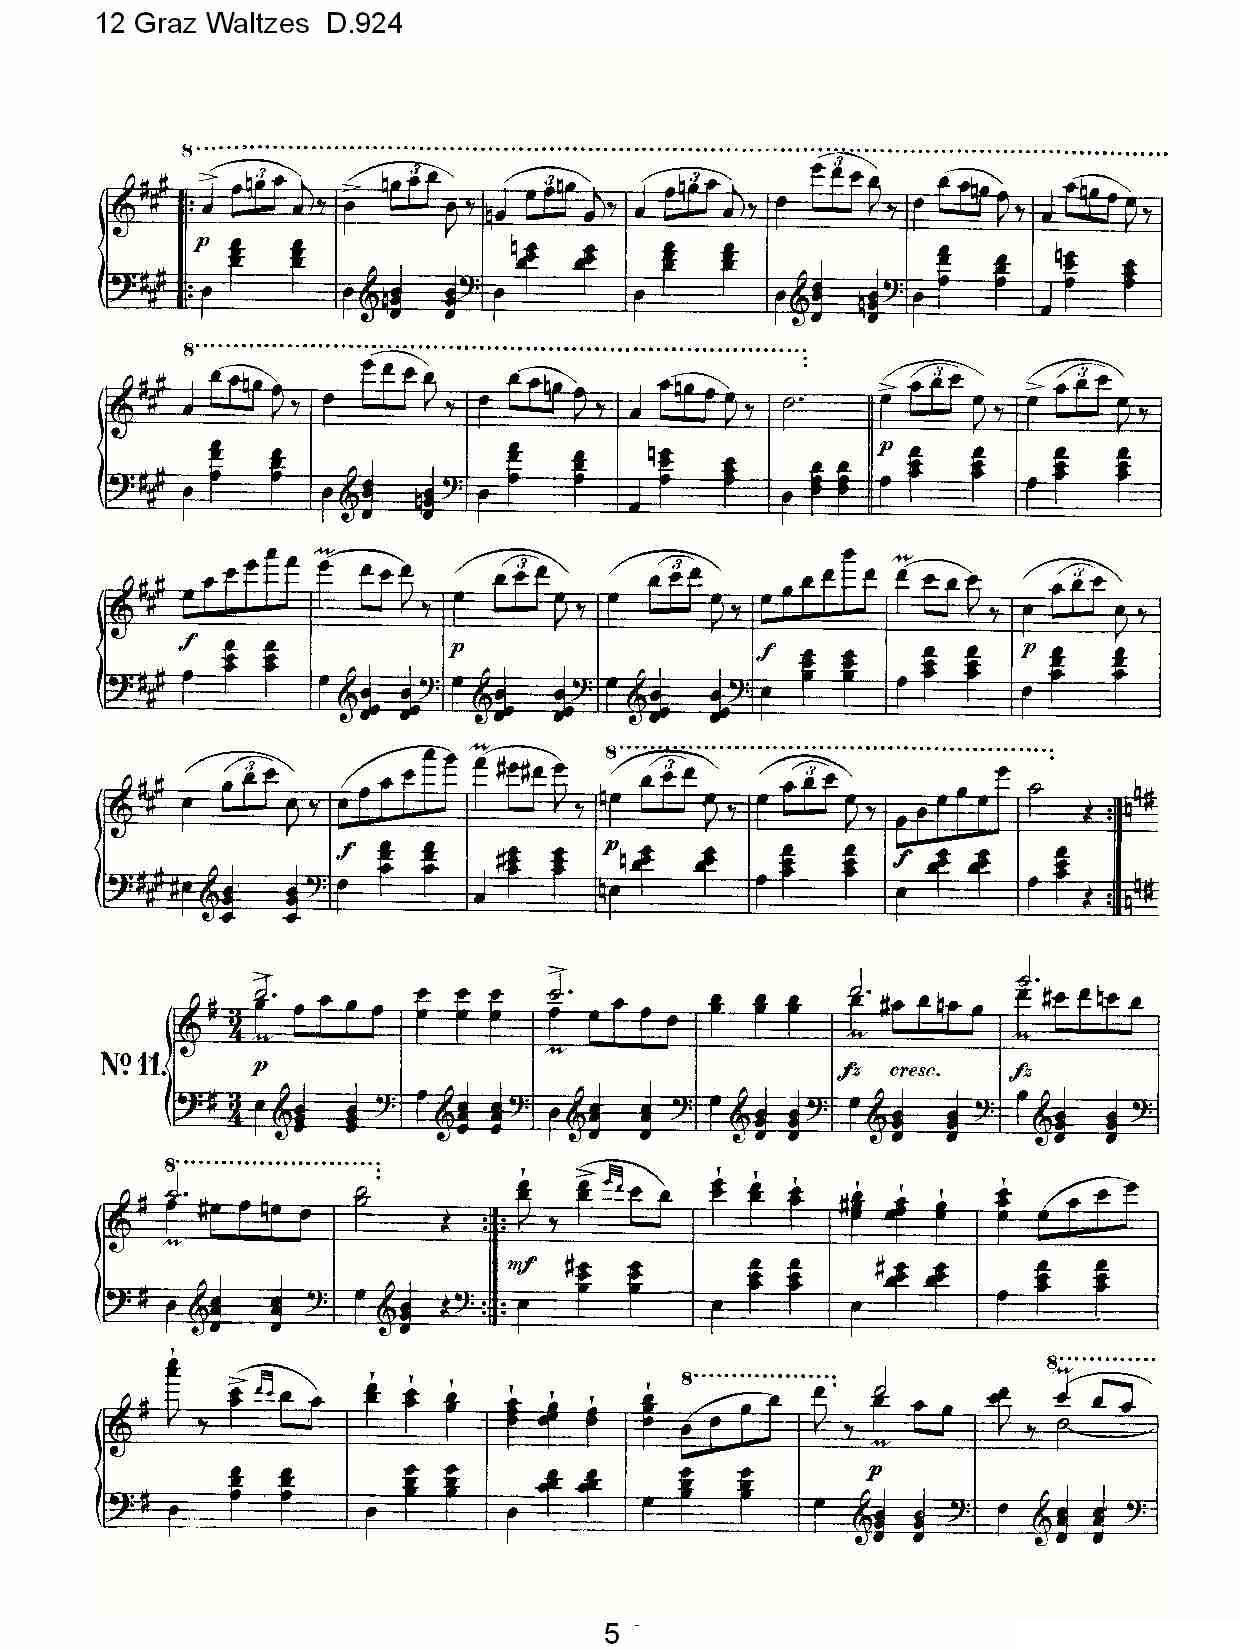 12 Graz Waltzes D.924（12格拉茨快步舞 D.924）钢琴曲谱（图5）